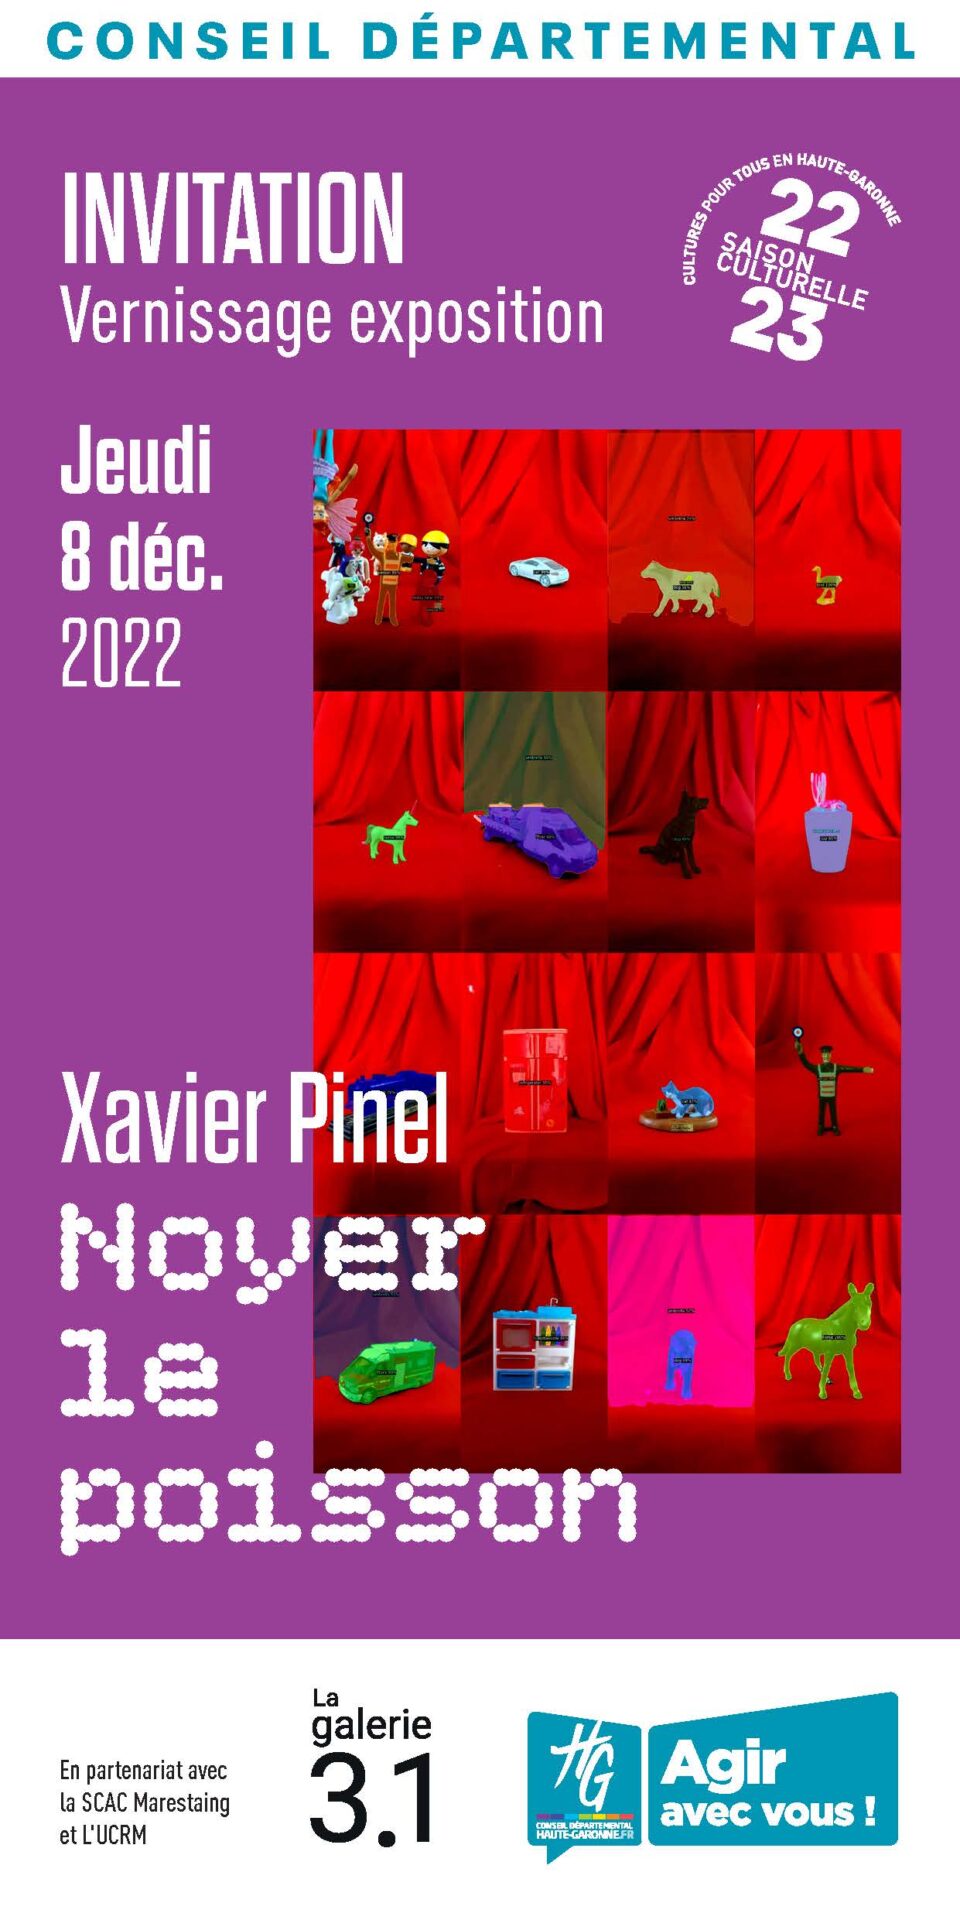 12781 - Expo Galerie 3.1 - Noyer le poisson - Carton invitation_Page_1